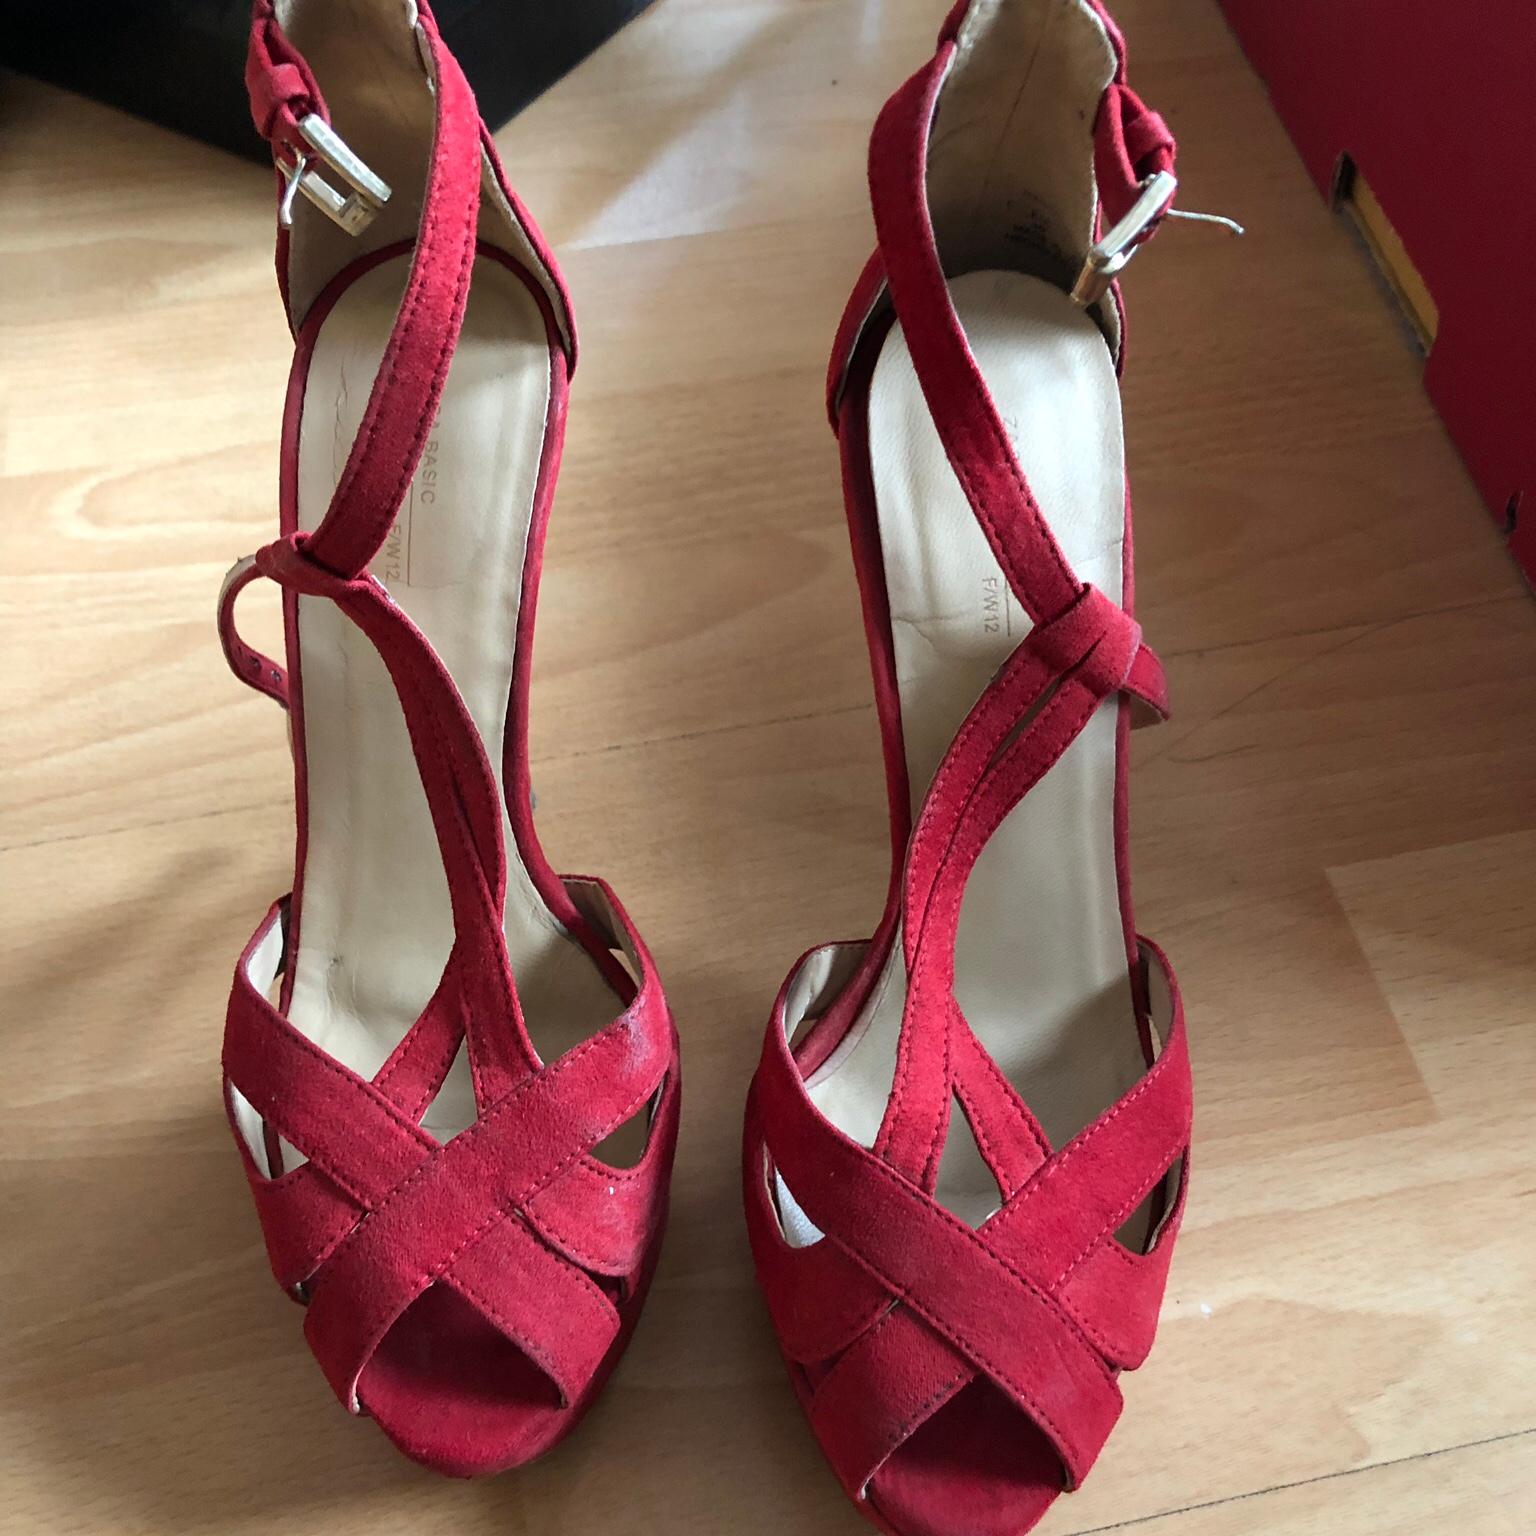 red high heel sandals uk